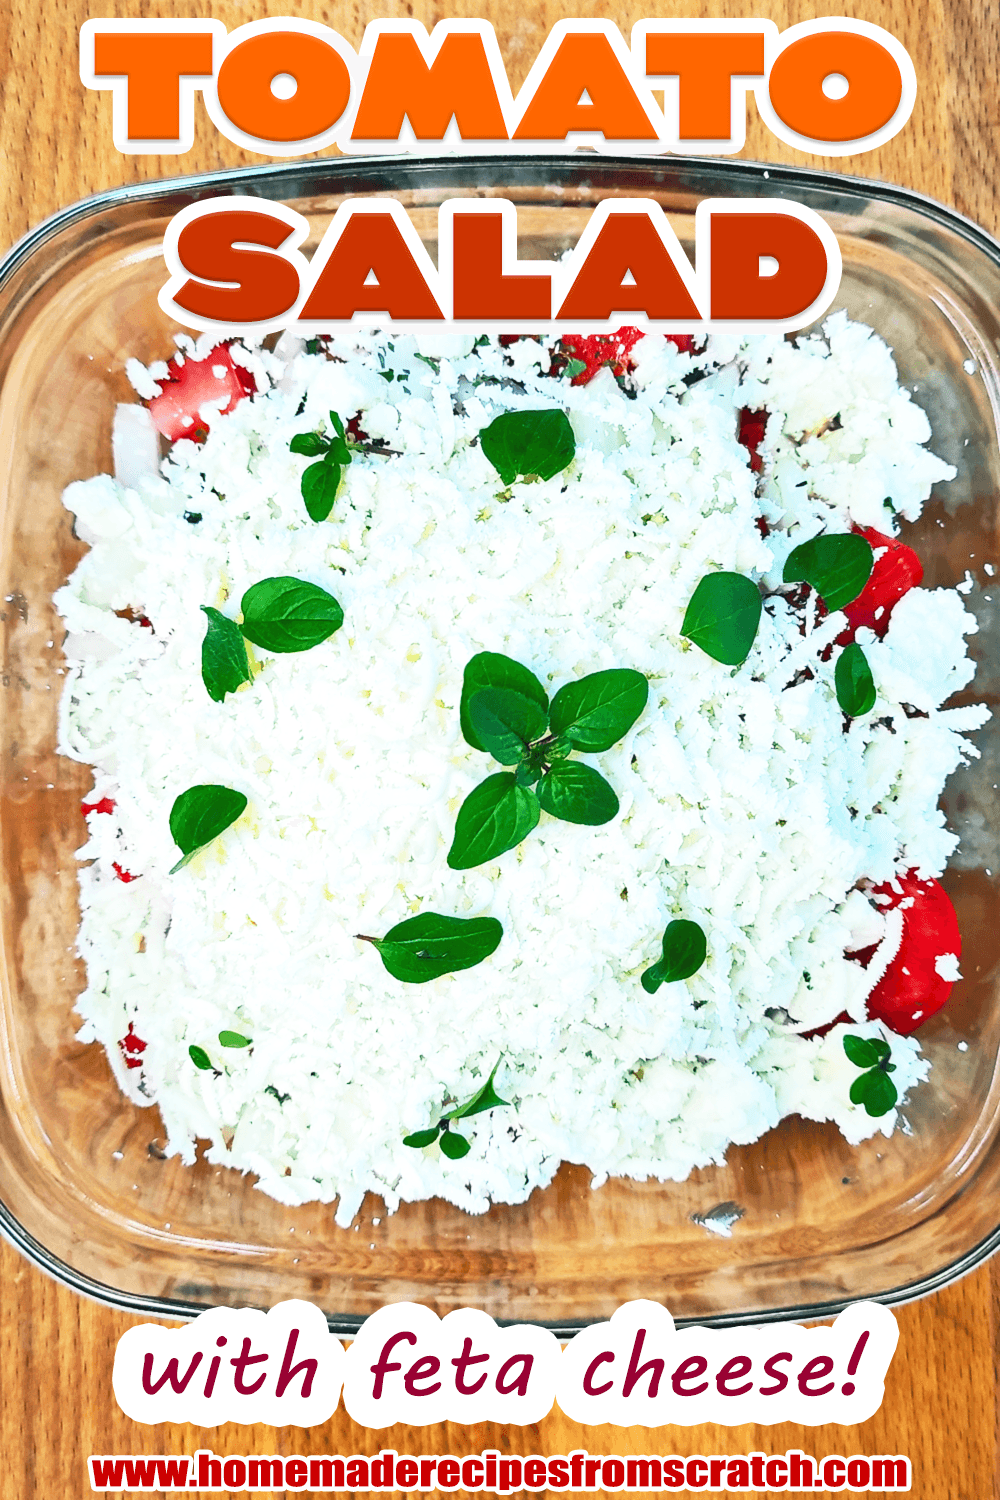 Greek Tomato Feta Salad